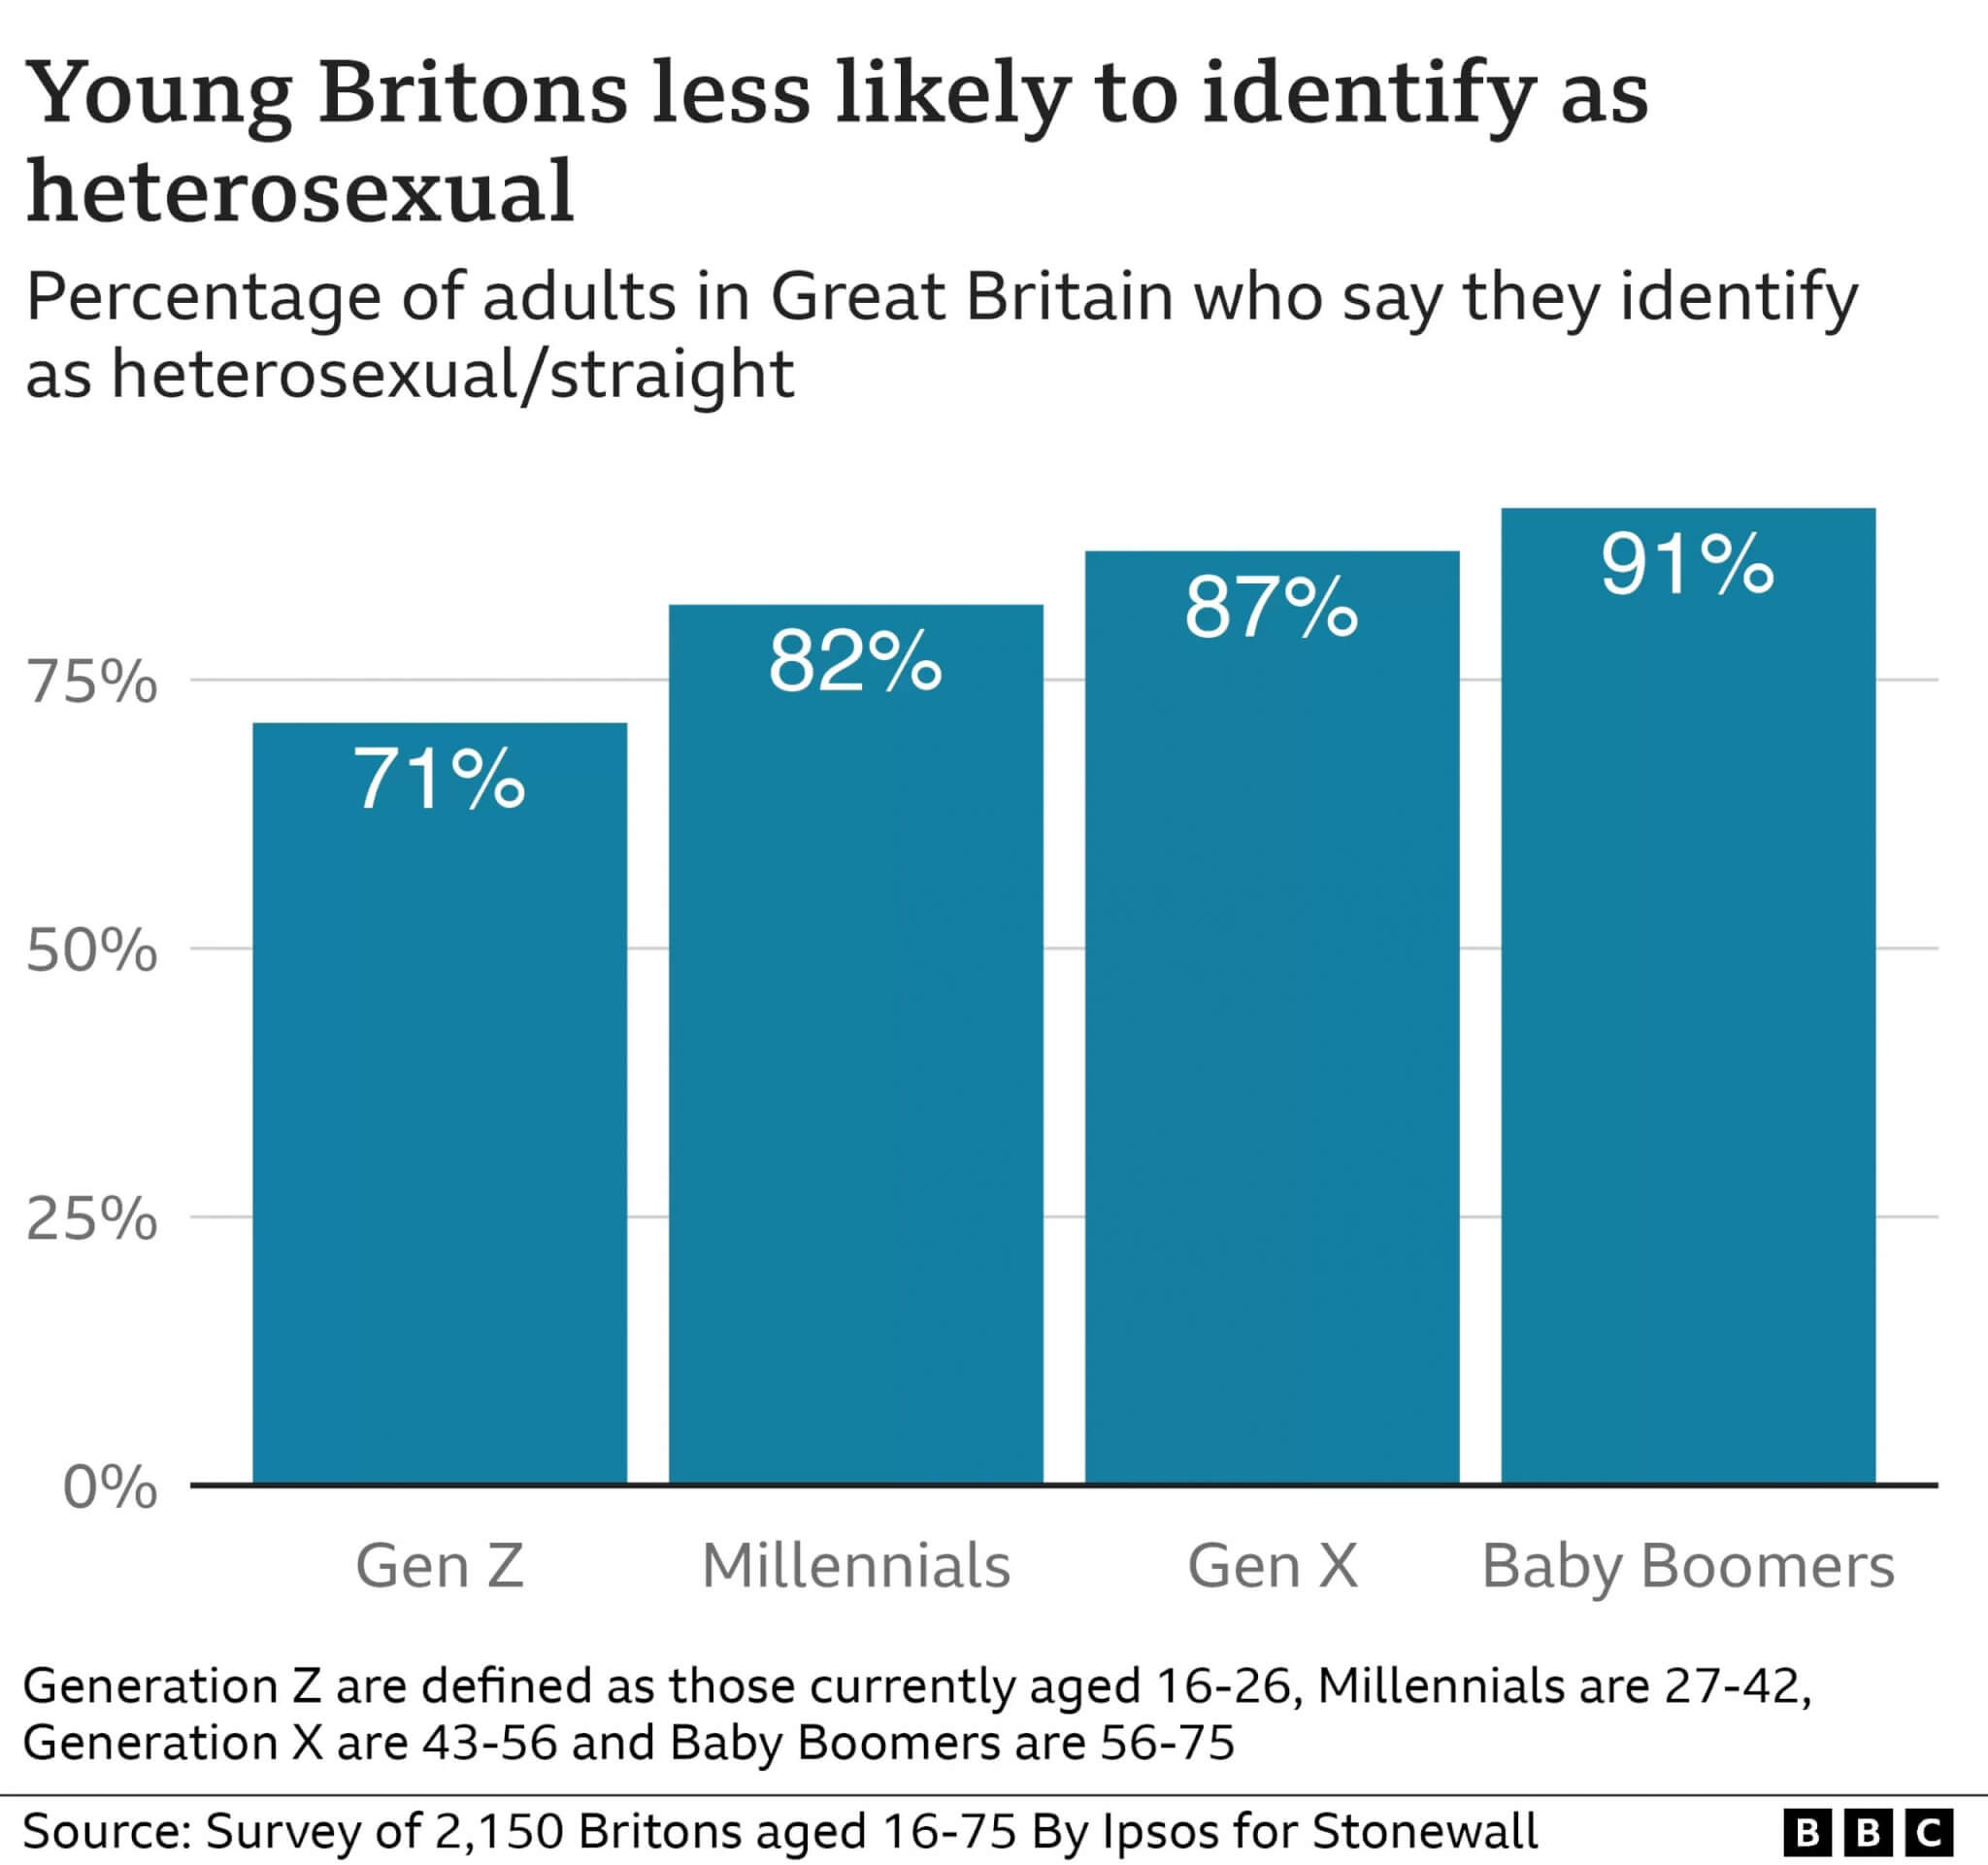 Regno Unito, sempre più persone si identificano come bisessuali - regno unito eterosessuali scaled - Gay.it